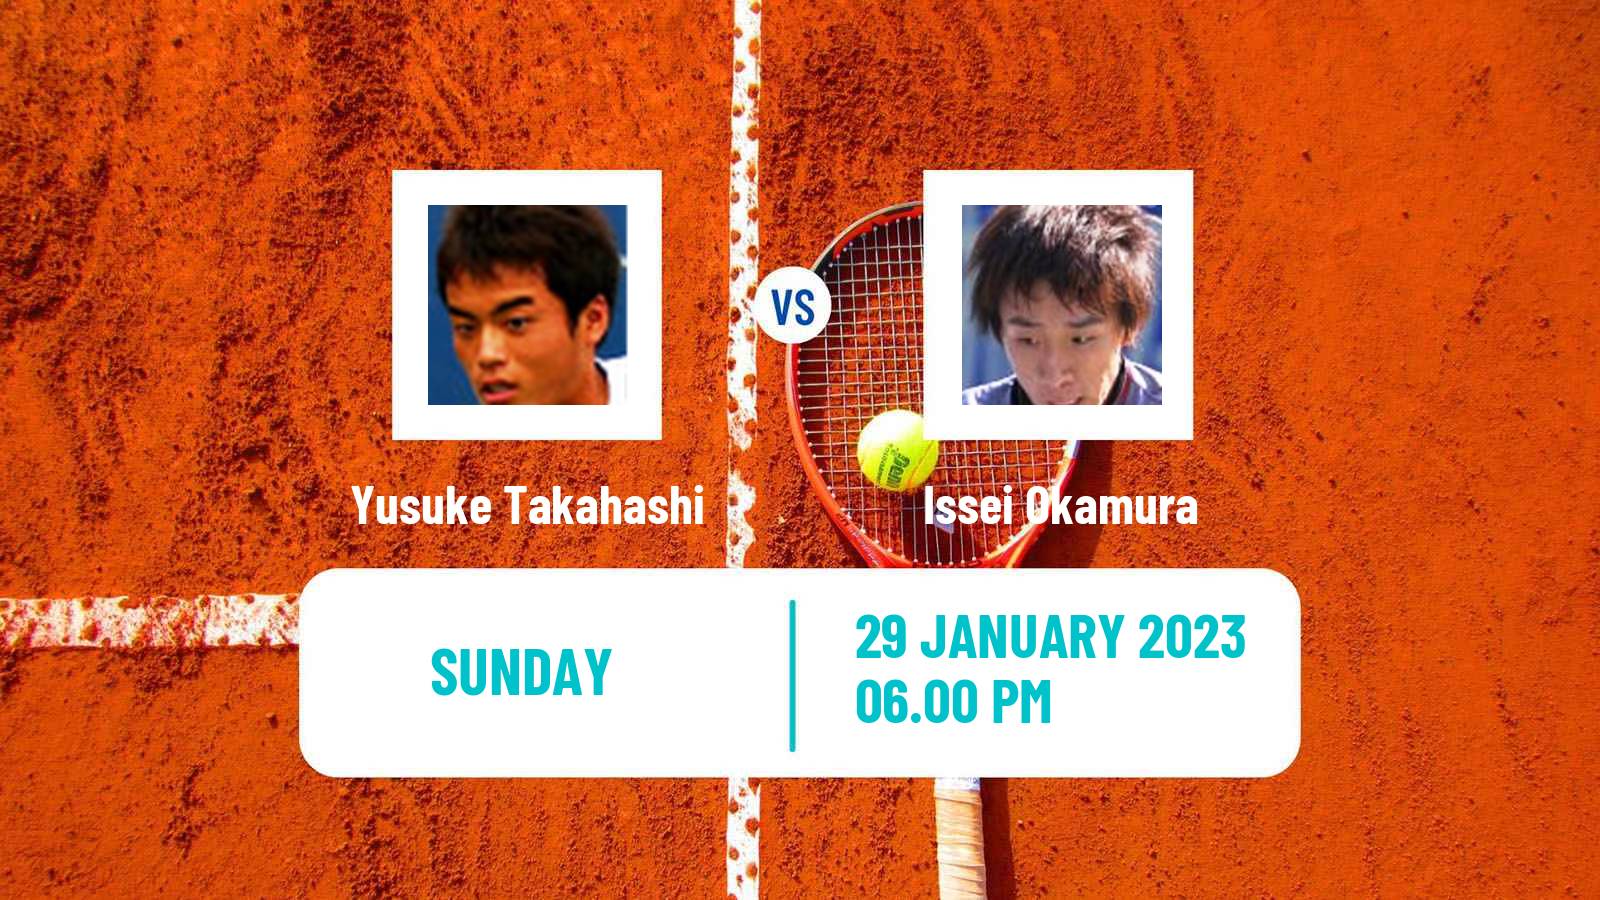 Tennis ATP Challenger Yusuke Takahashi - Issei Okamura